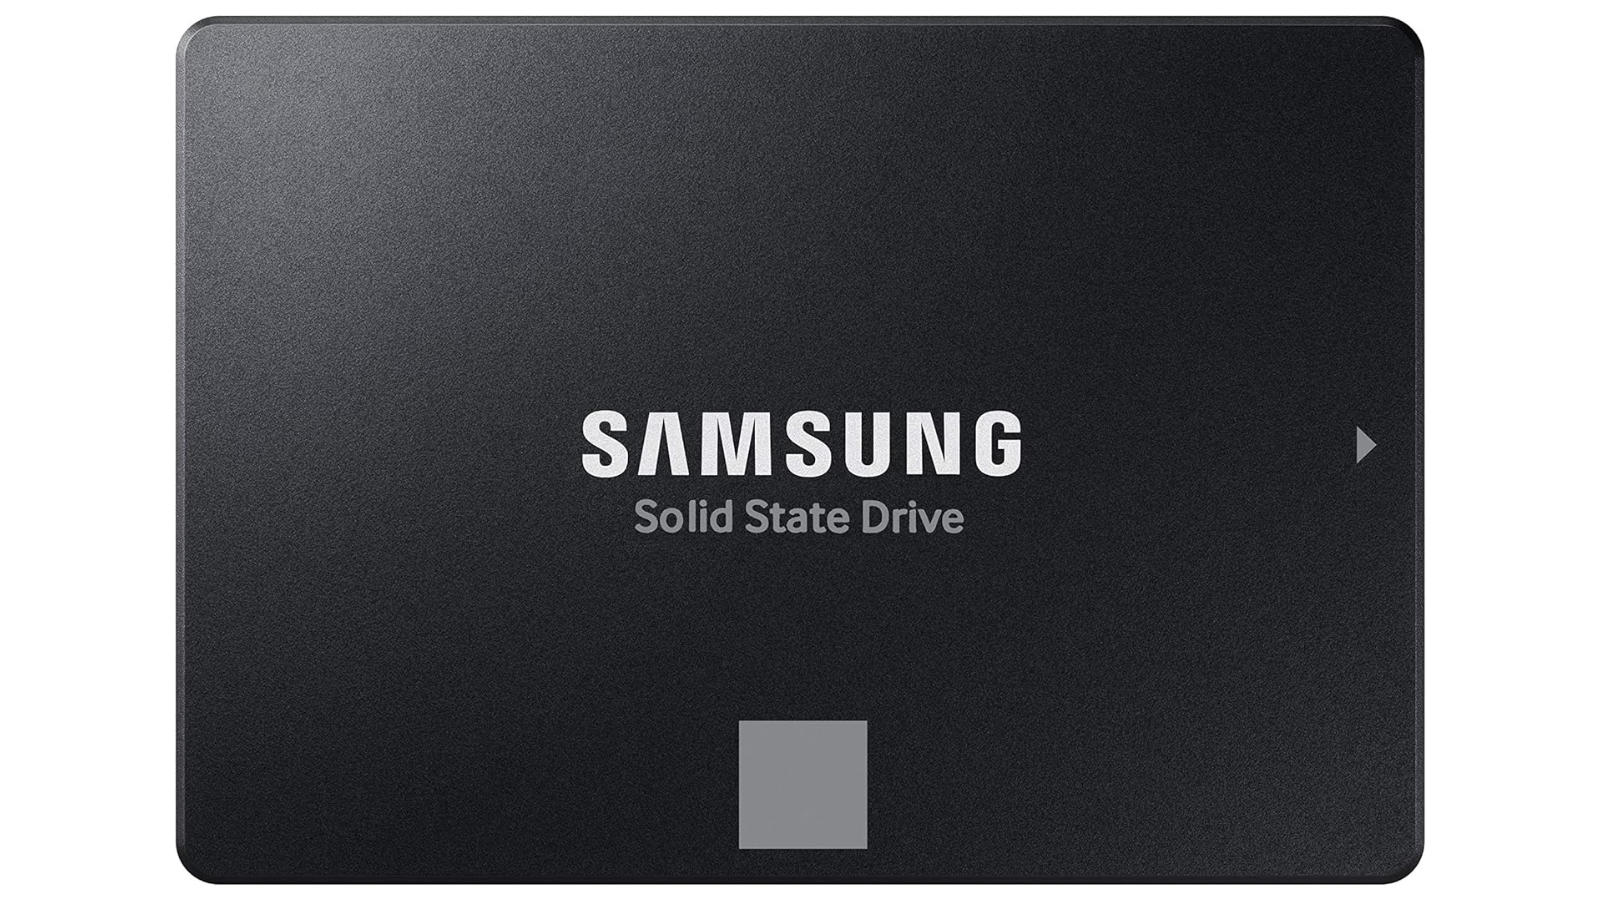 Samsung 870 EVO SATA SSD against a white background.